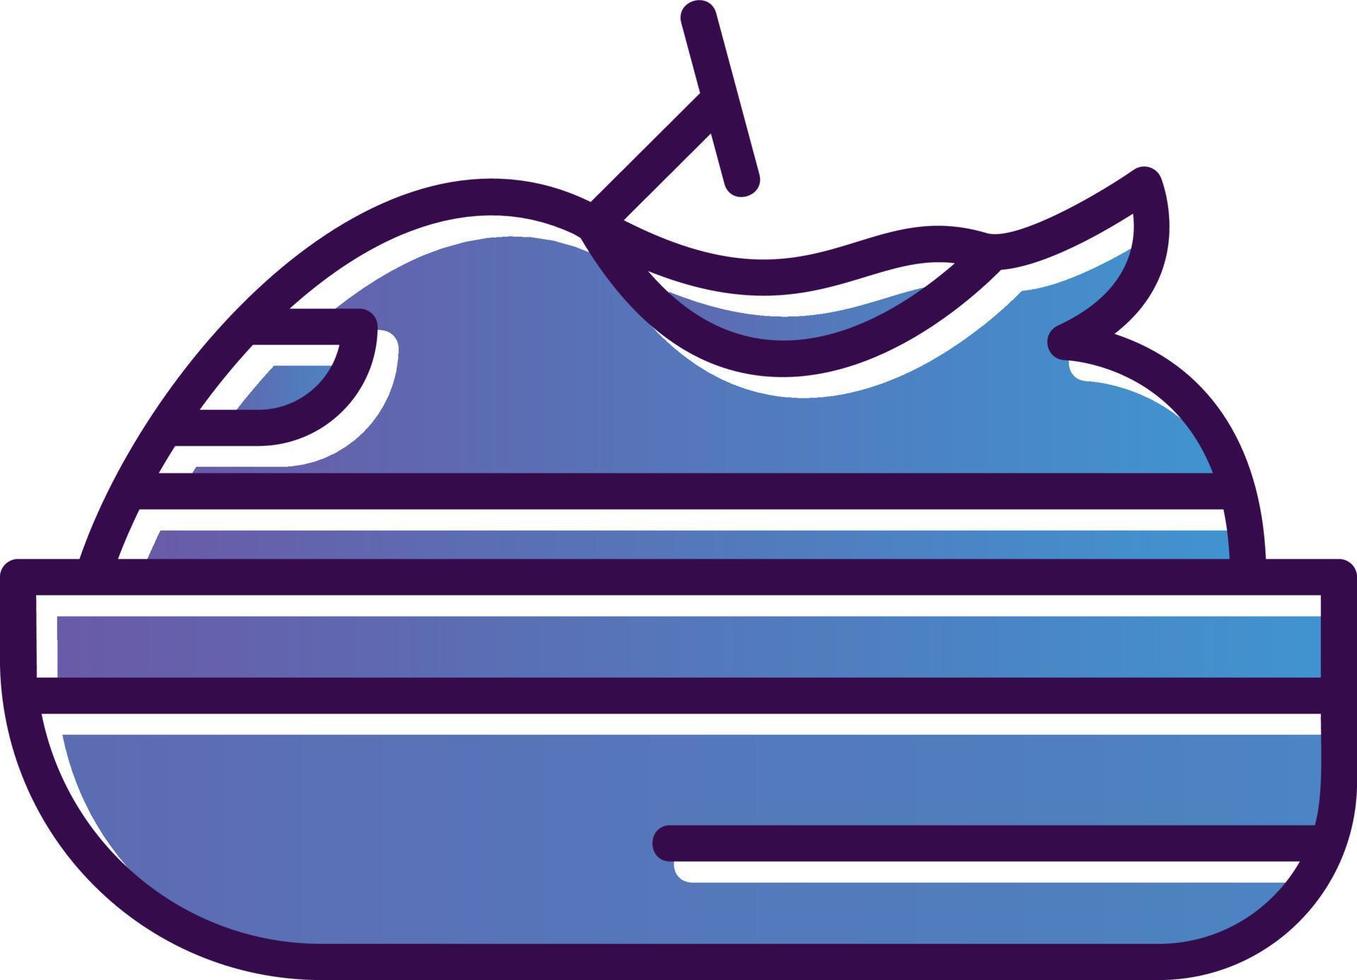 design de ícone de vetor de jet ski